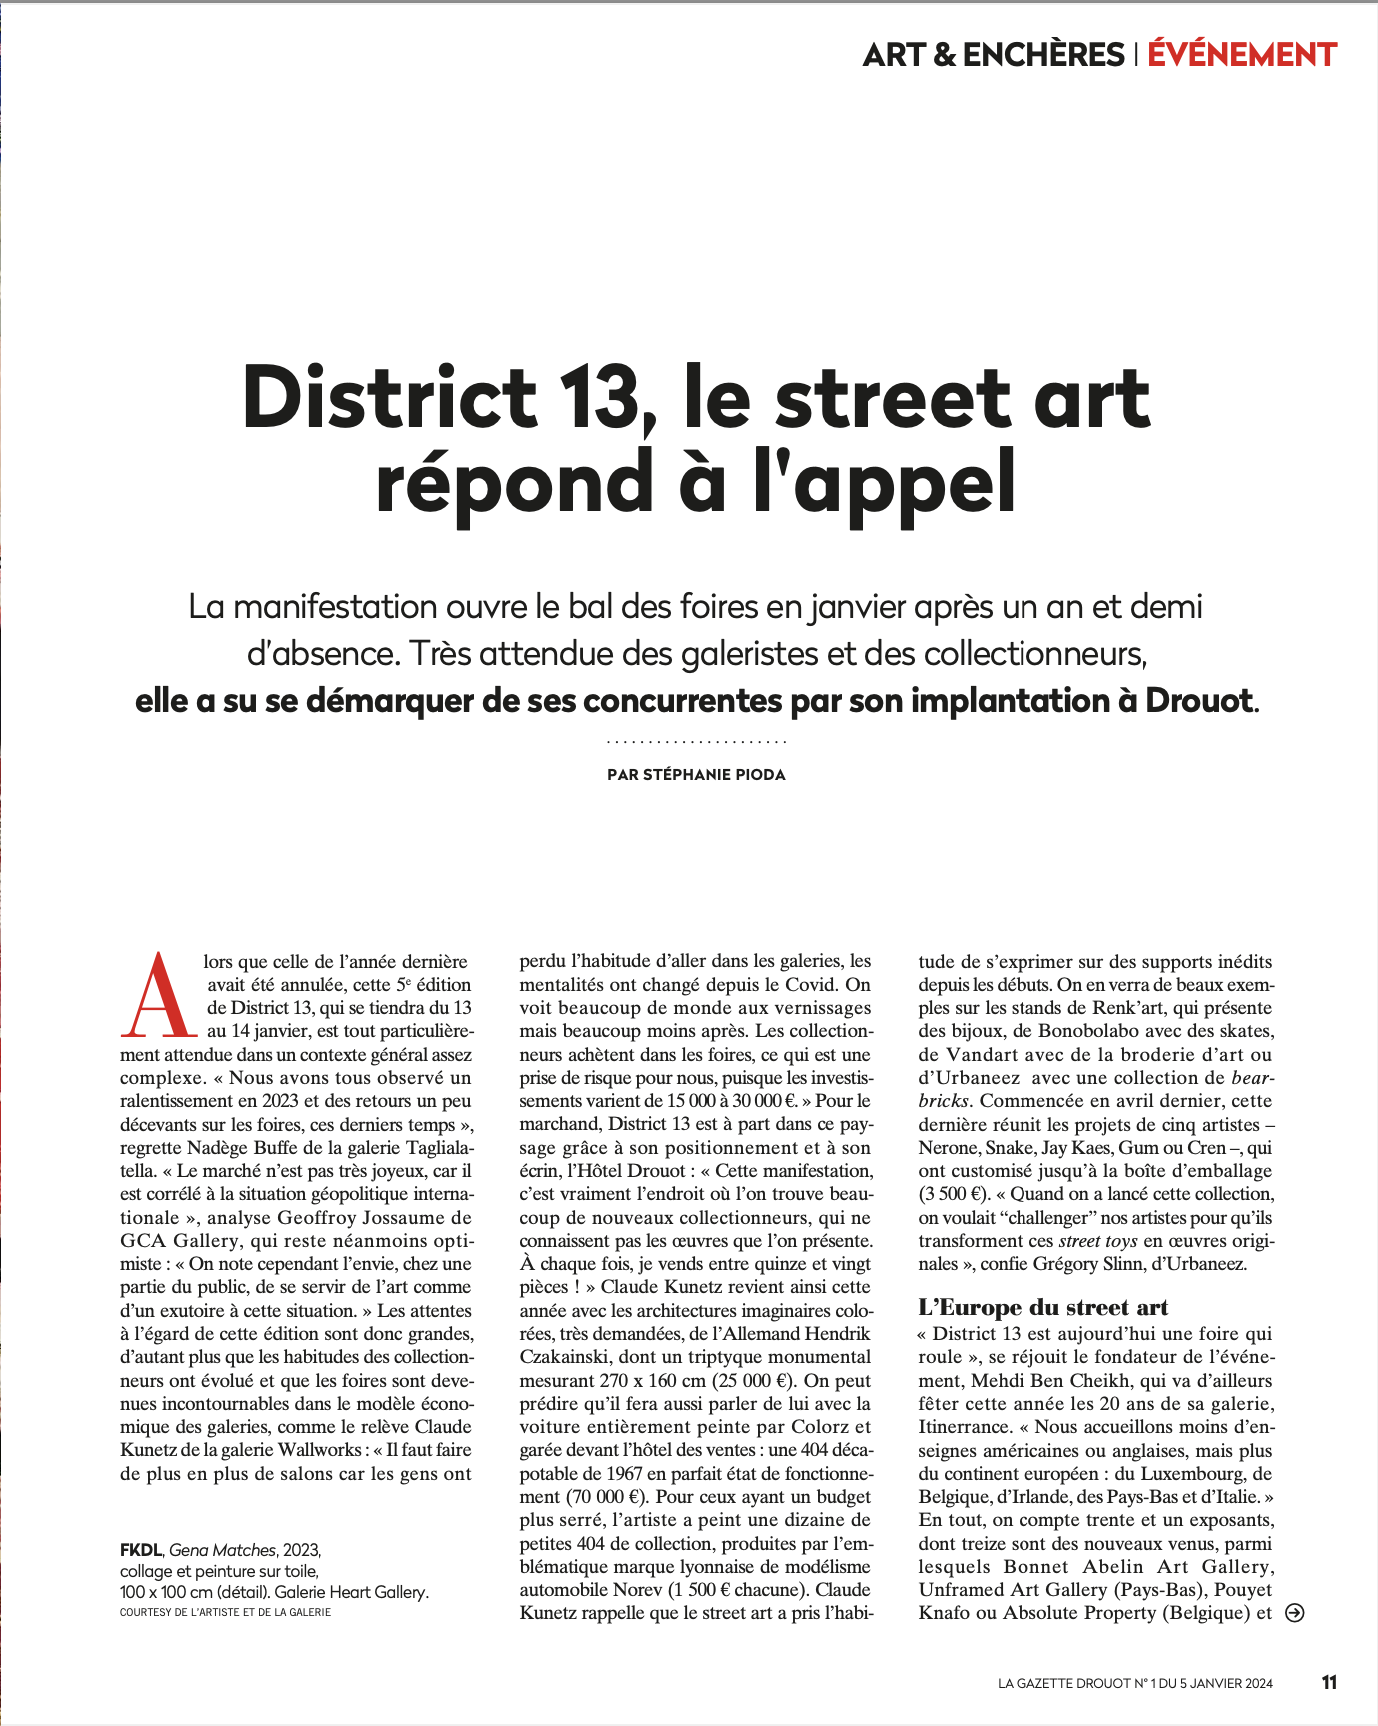 Stéphanie Pioda | La Gazette Drouot | 5-11 janvier 2024